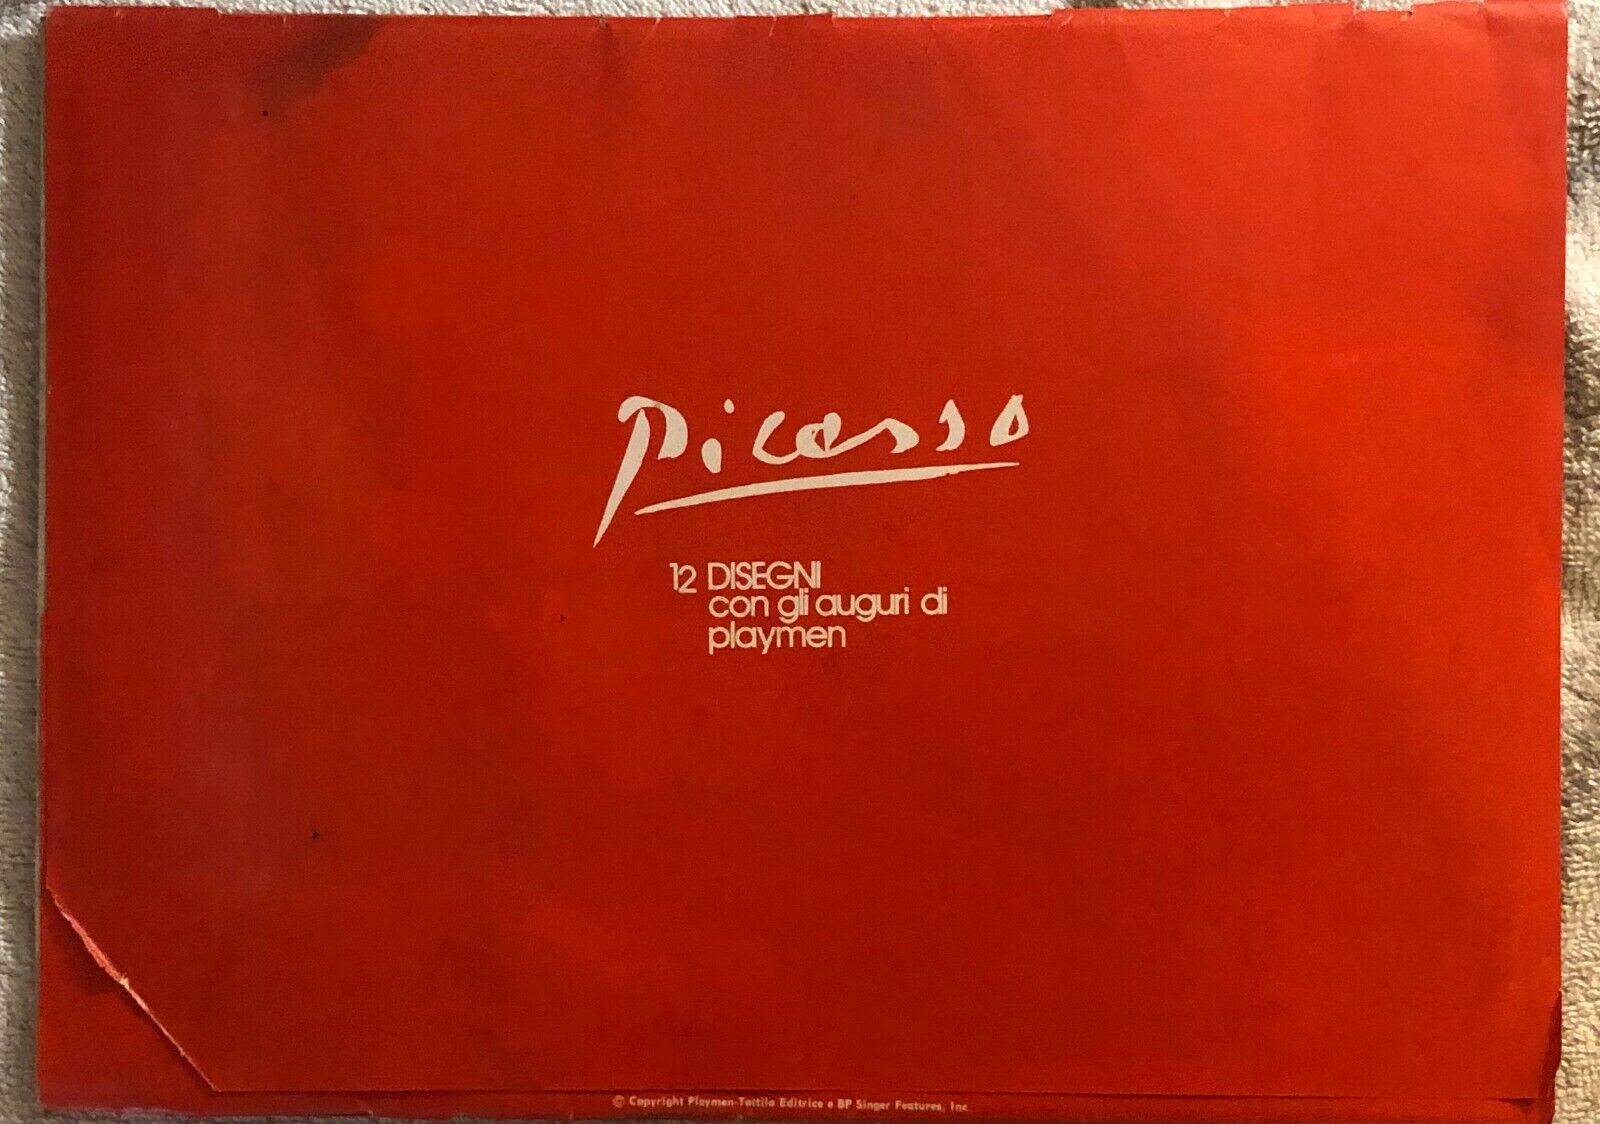 Picasso, 12 disegni con gli auguri di Playmen di Pablo Picasso,  1968,  Playmen